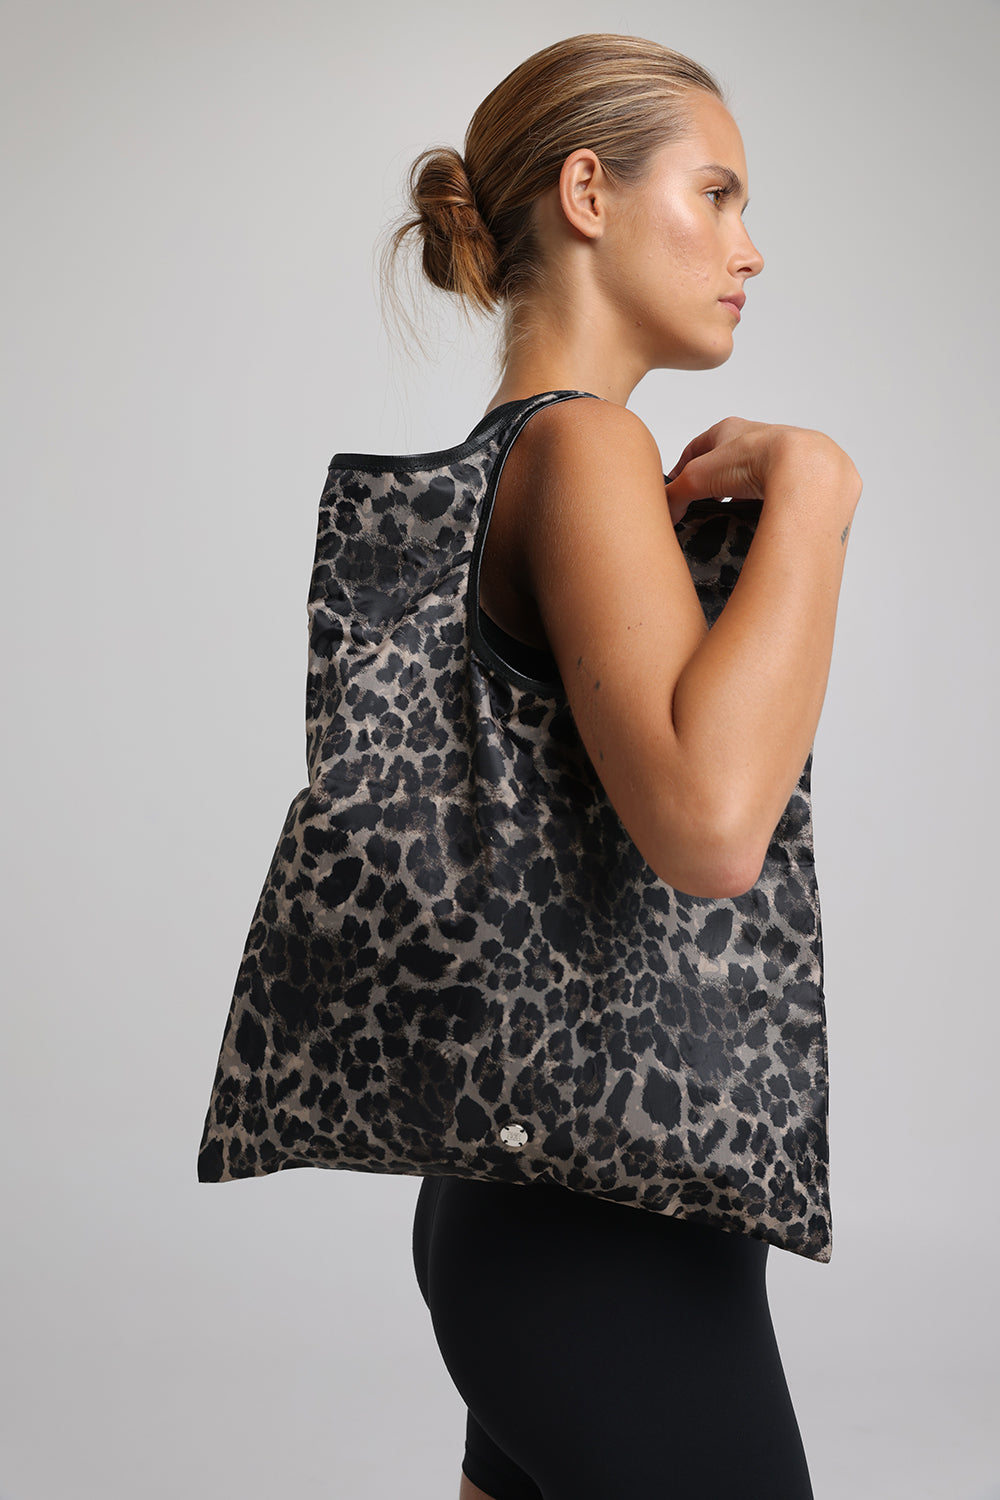 תיק ספורט לנשים דגם Leopard Tote Bag